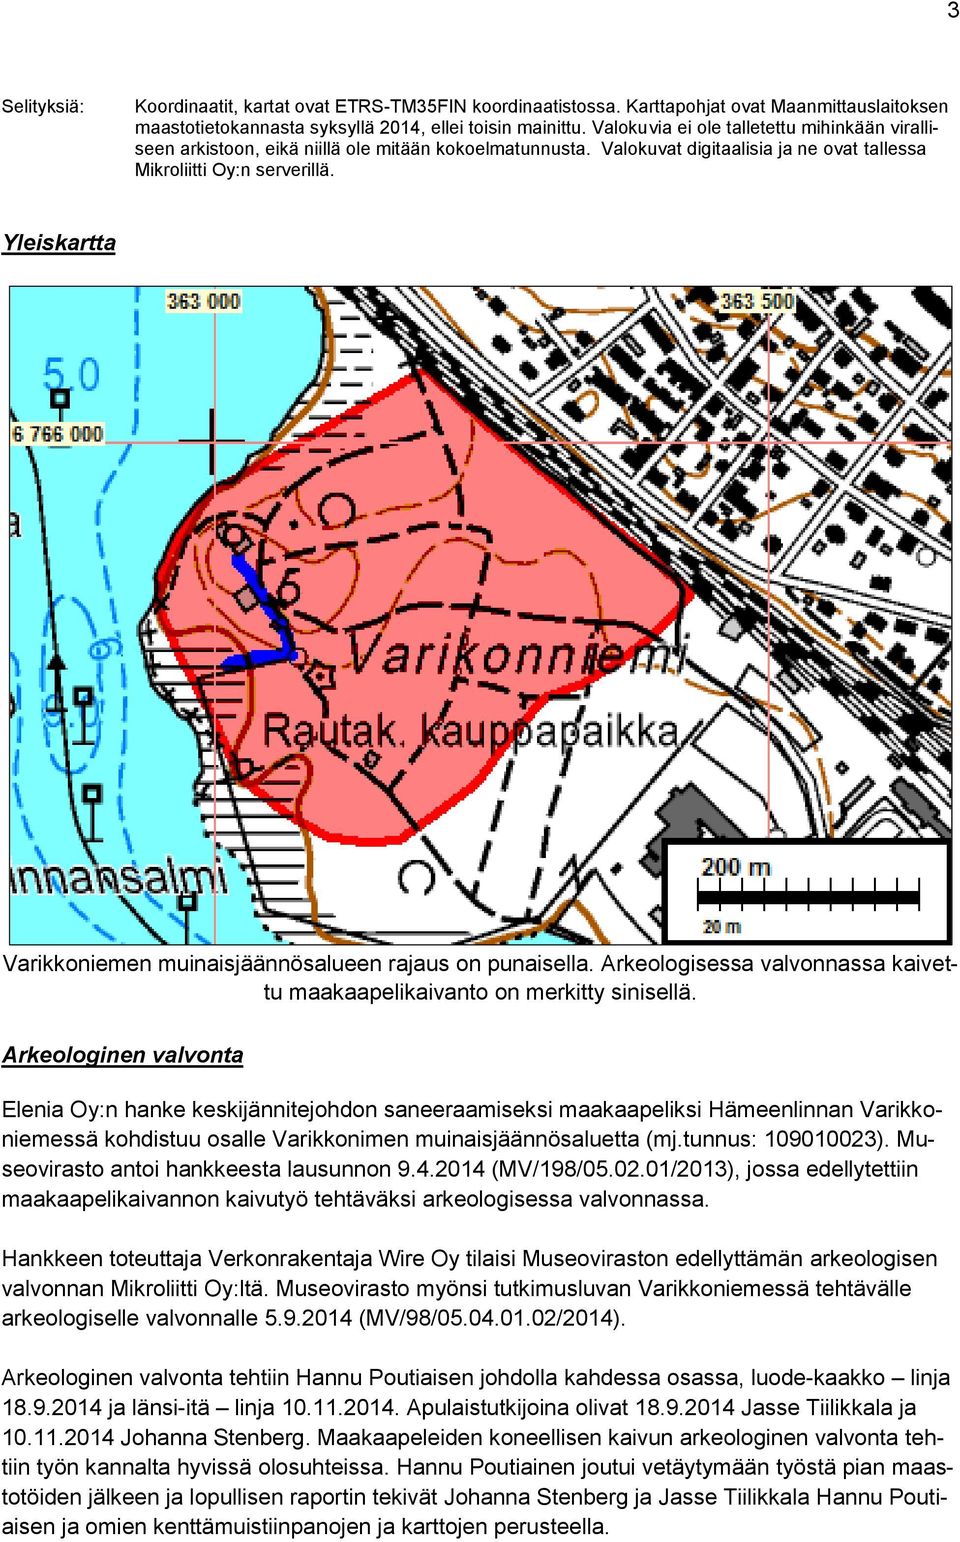 Yleiskartta Varikkoniemen muinaisjäännösalueen rajaus on punaisella. Arkeologisessa valvonnassa kaivettu maakaapelikaivanto on merkitty sinisellä.